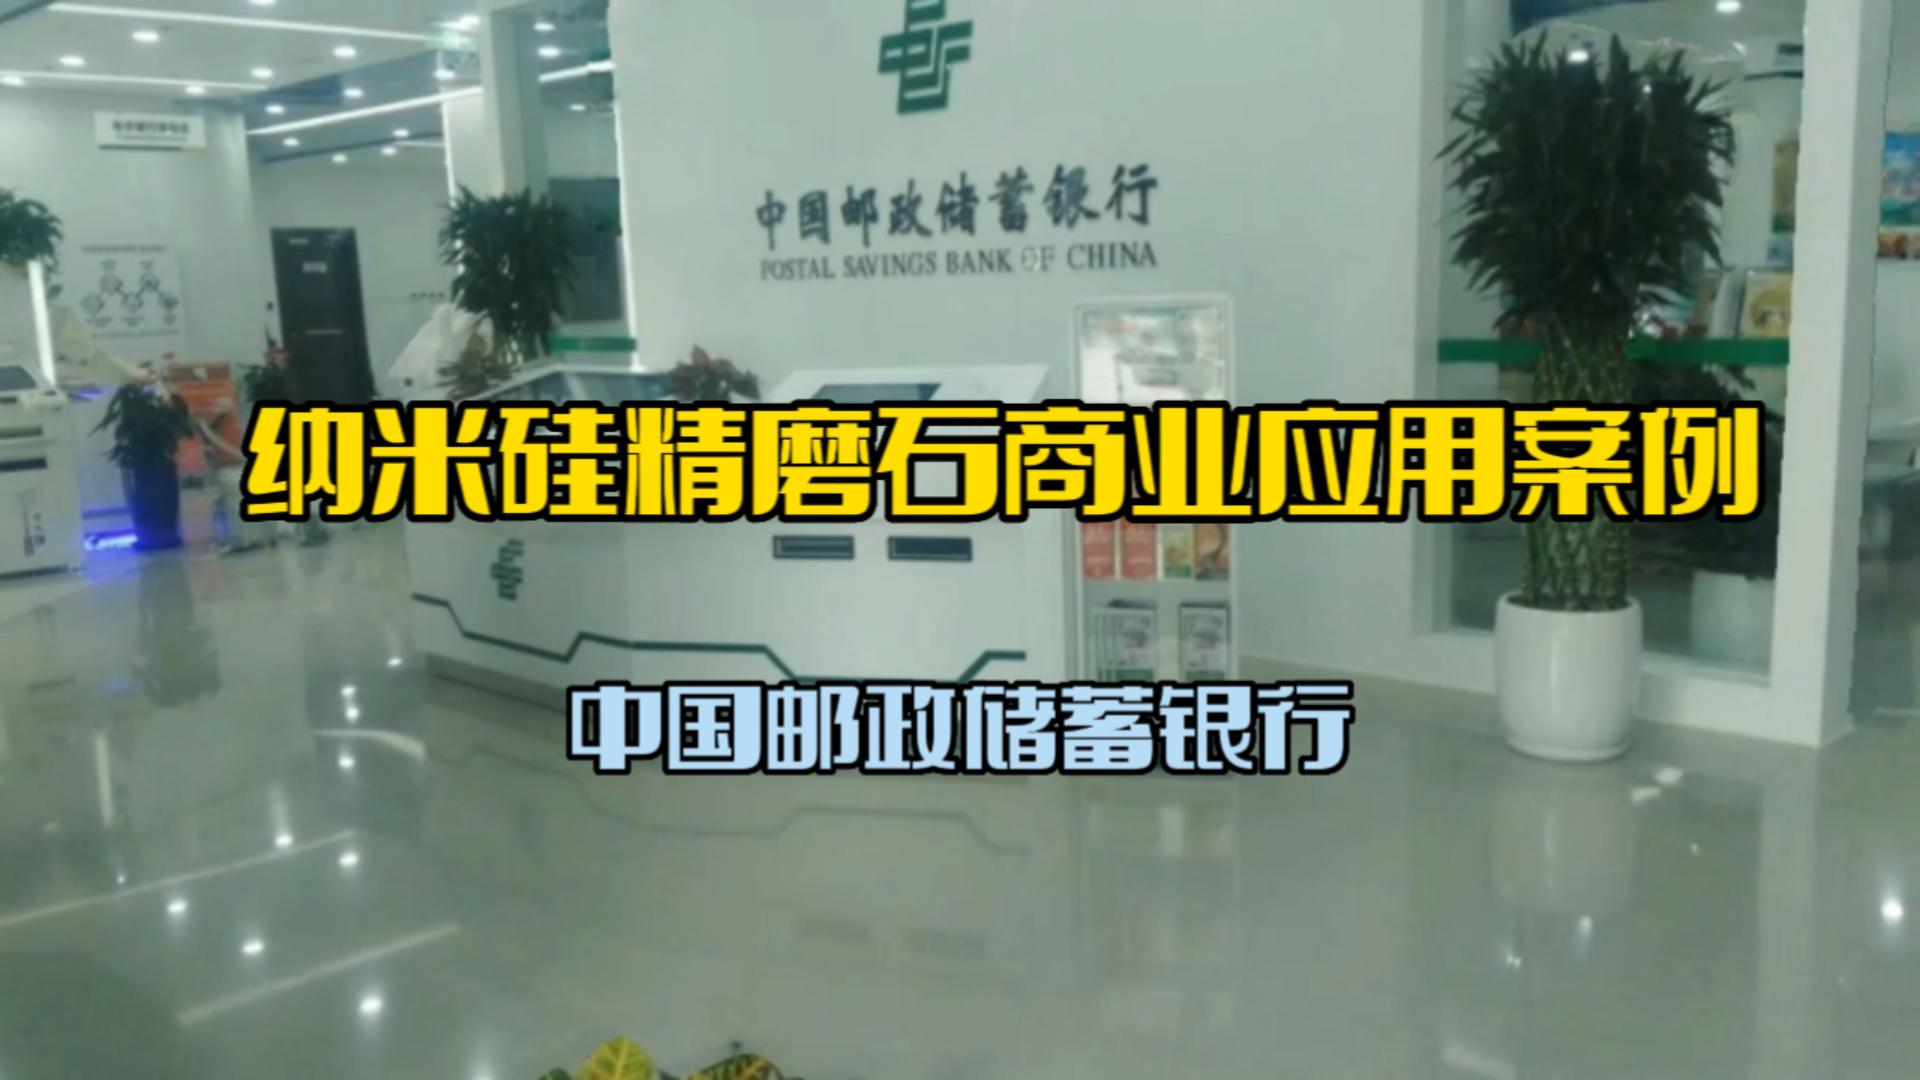 纳米硅精磨石商业应用案例-中国邮政储蓄银行